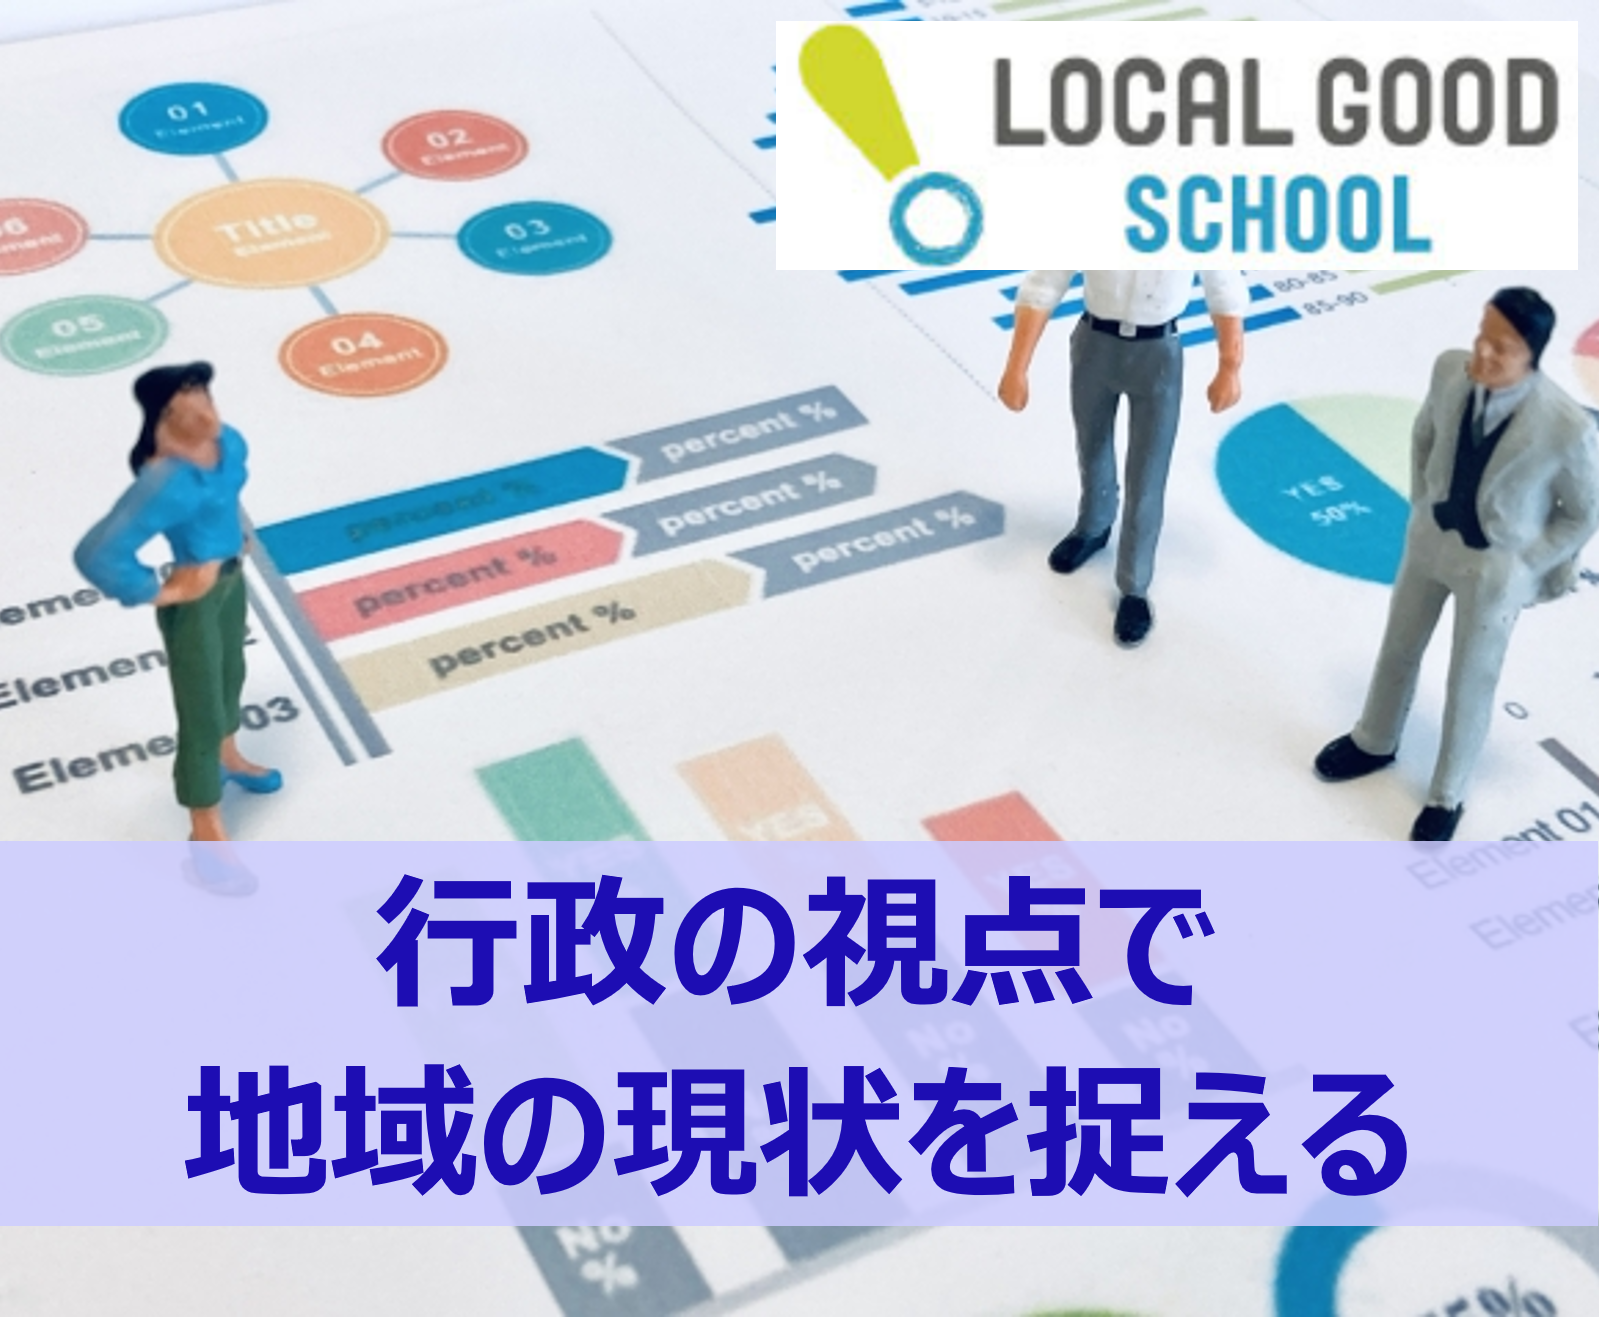 【LOCAL GOOD SCHOOL】横浜におけるヘルスケアイノベーションの先進事例